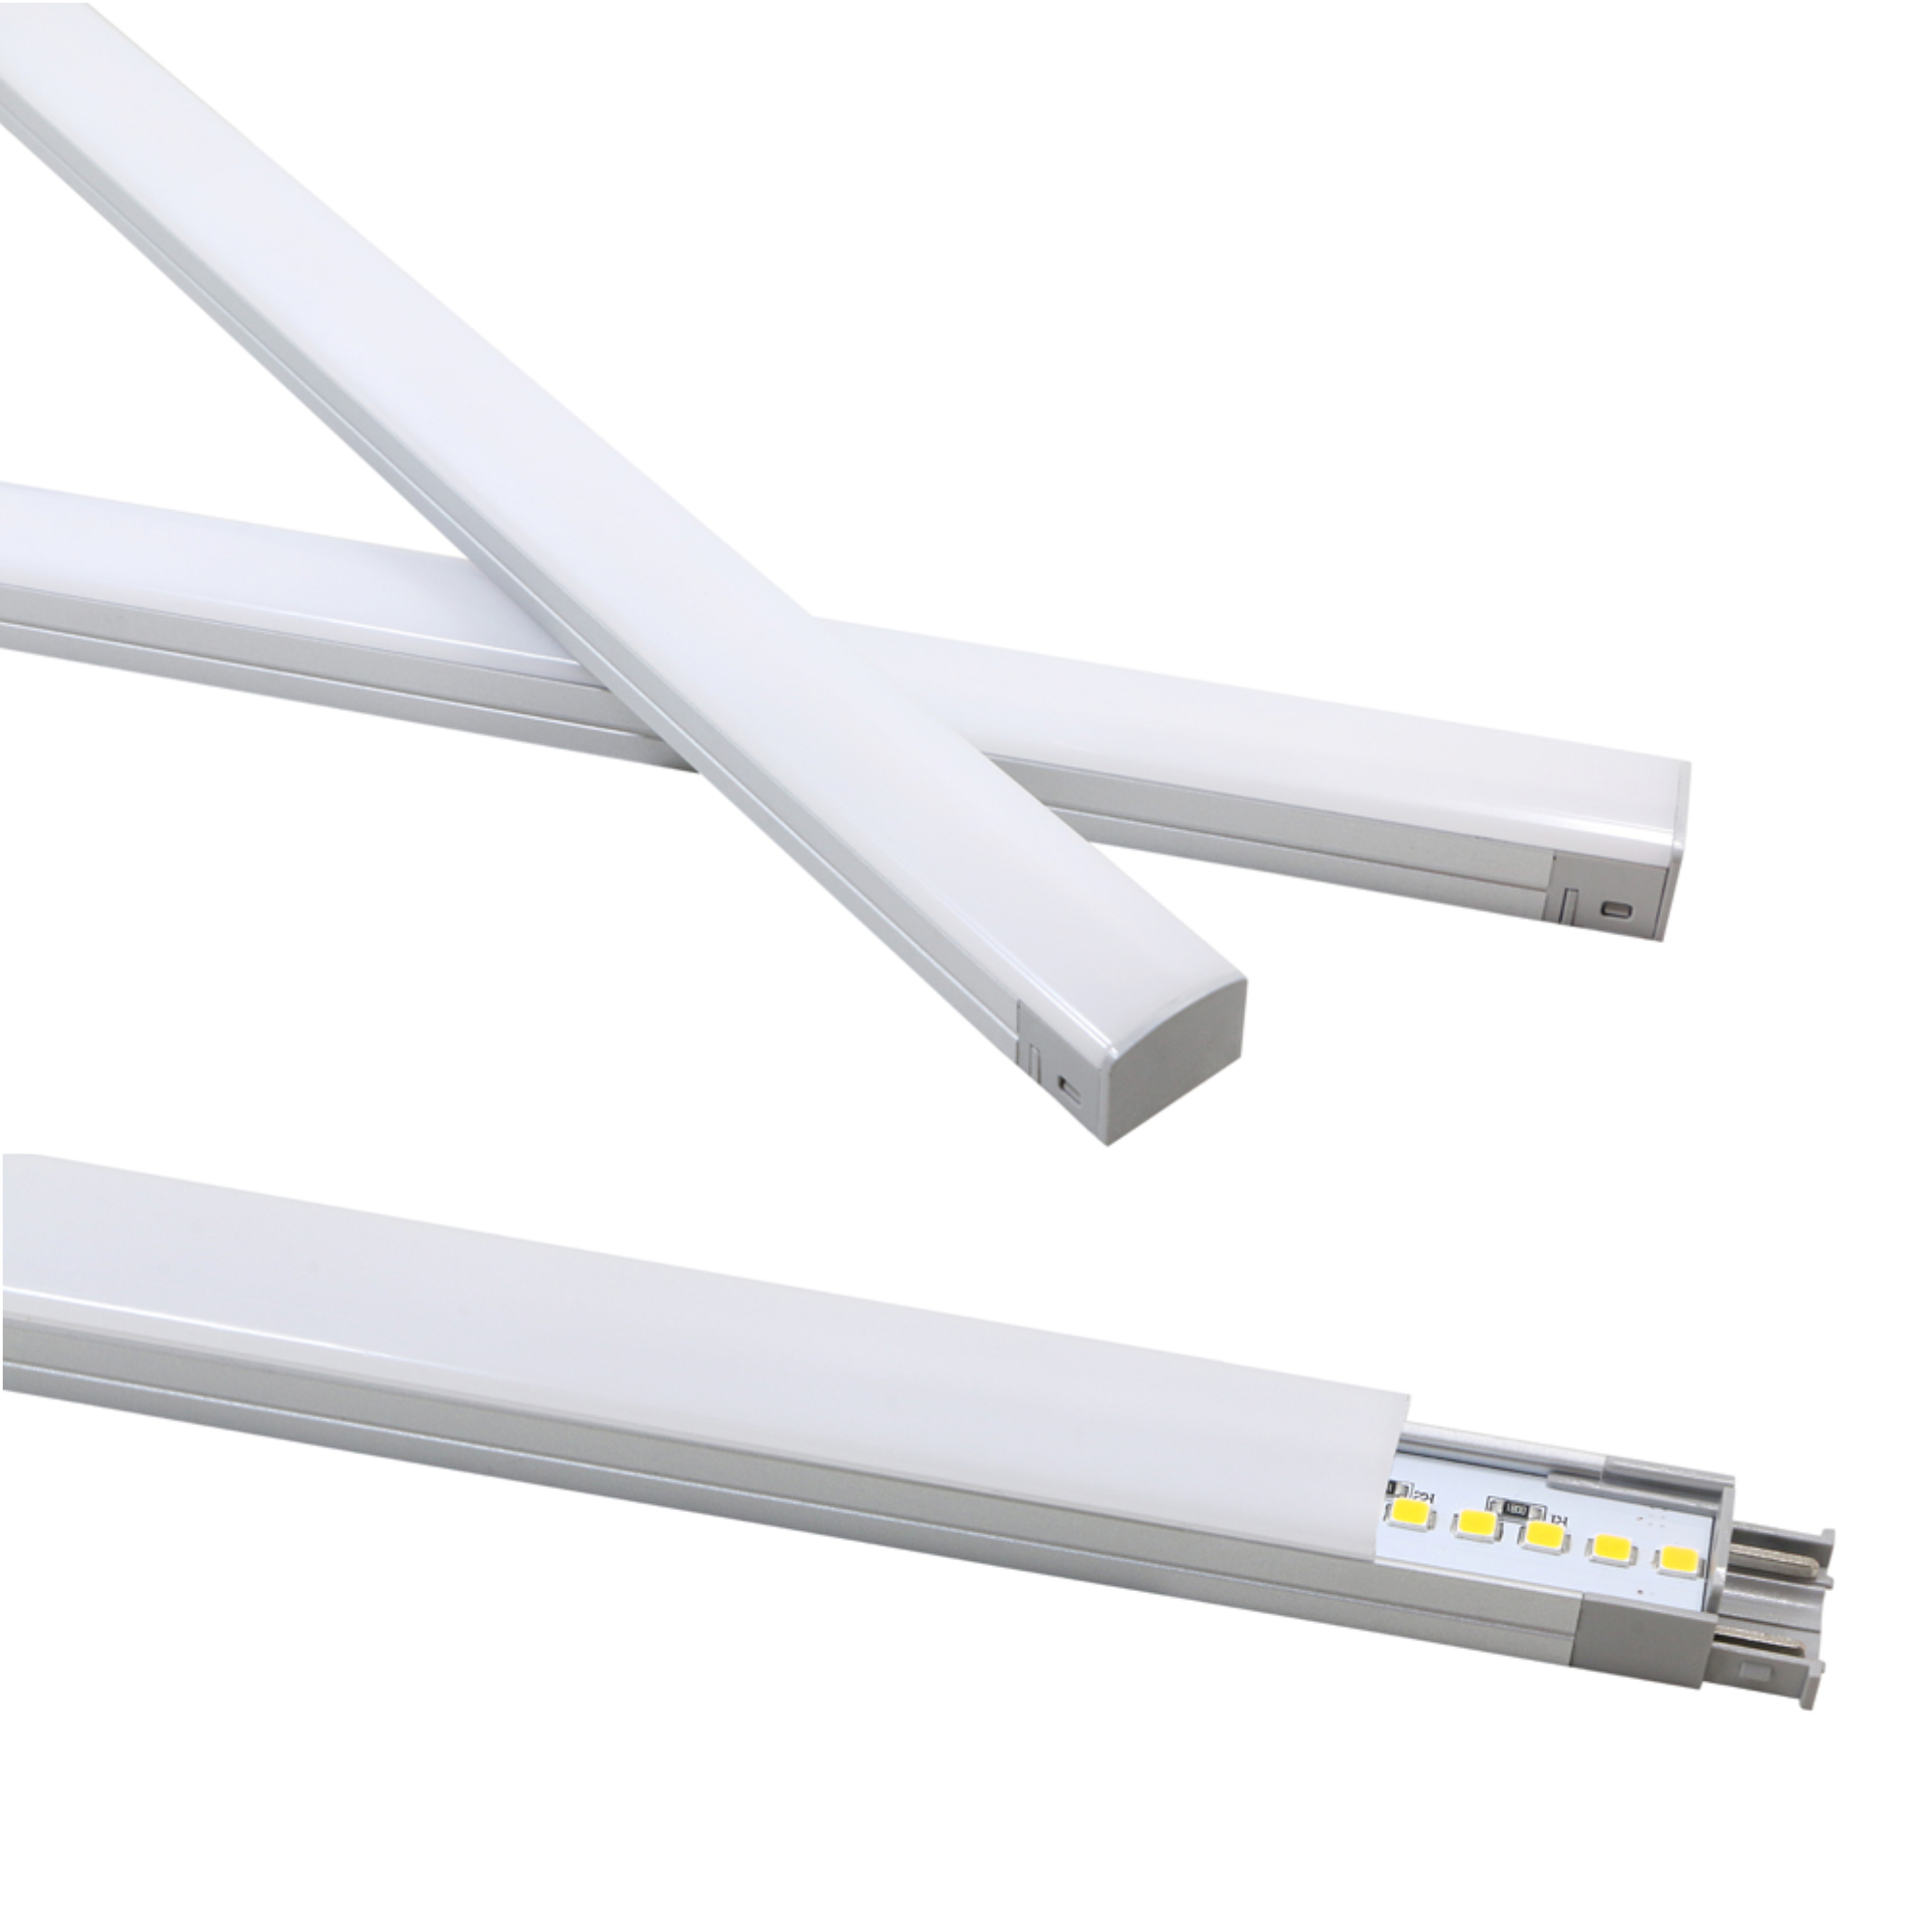 kalb| Lineara 50cm LED Unterbausystem Küchenleuchten für 7W kalb-licht, einkaufen individuelles Leuchten online Möbel | Warmweiß Unterbauleuchte